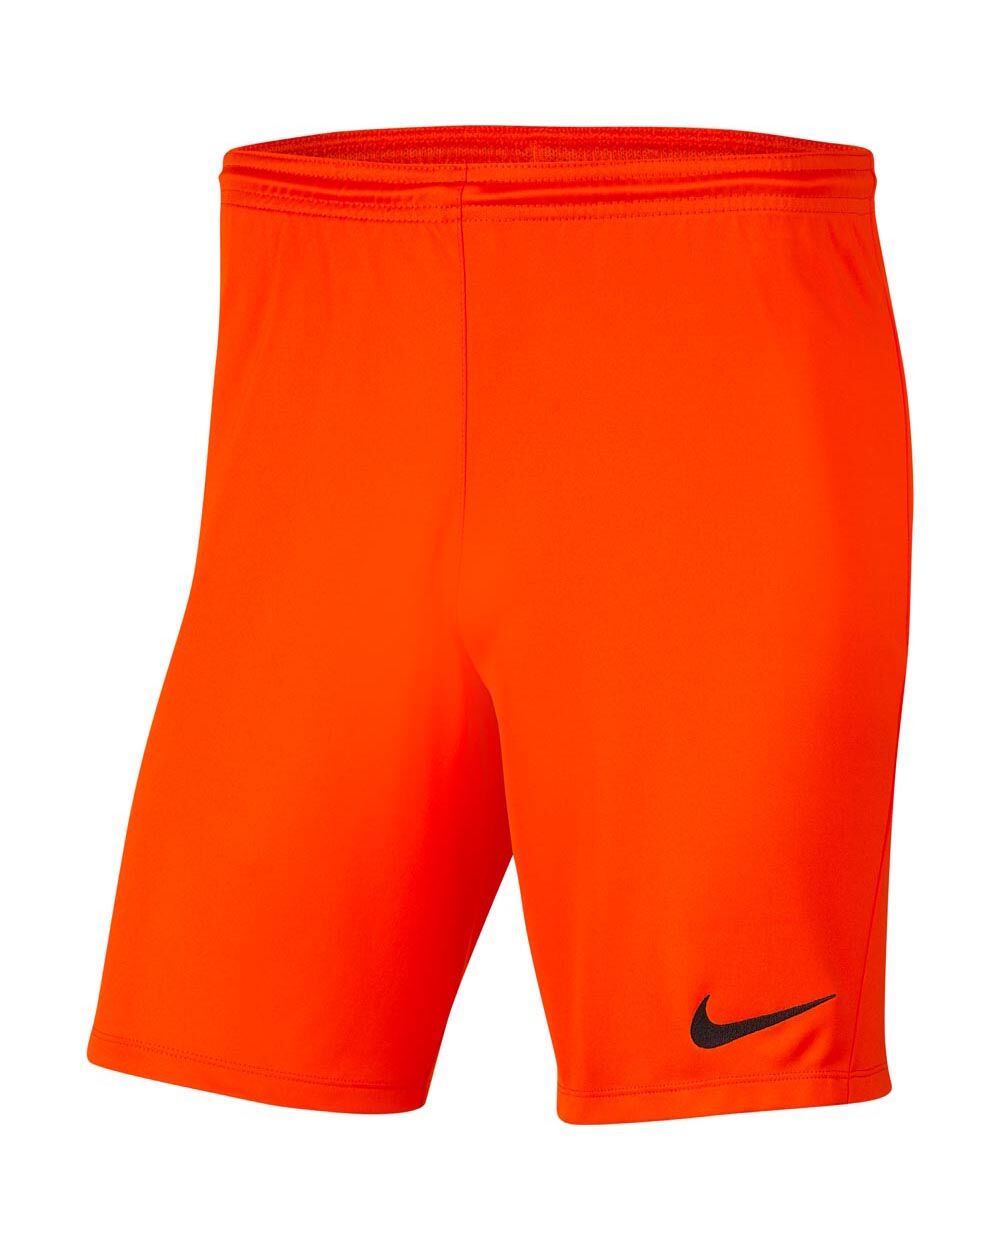 Pantalón corto Nike Park III Naranja para Niño - BV6865-819